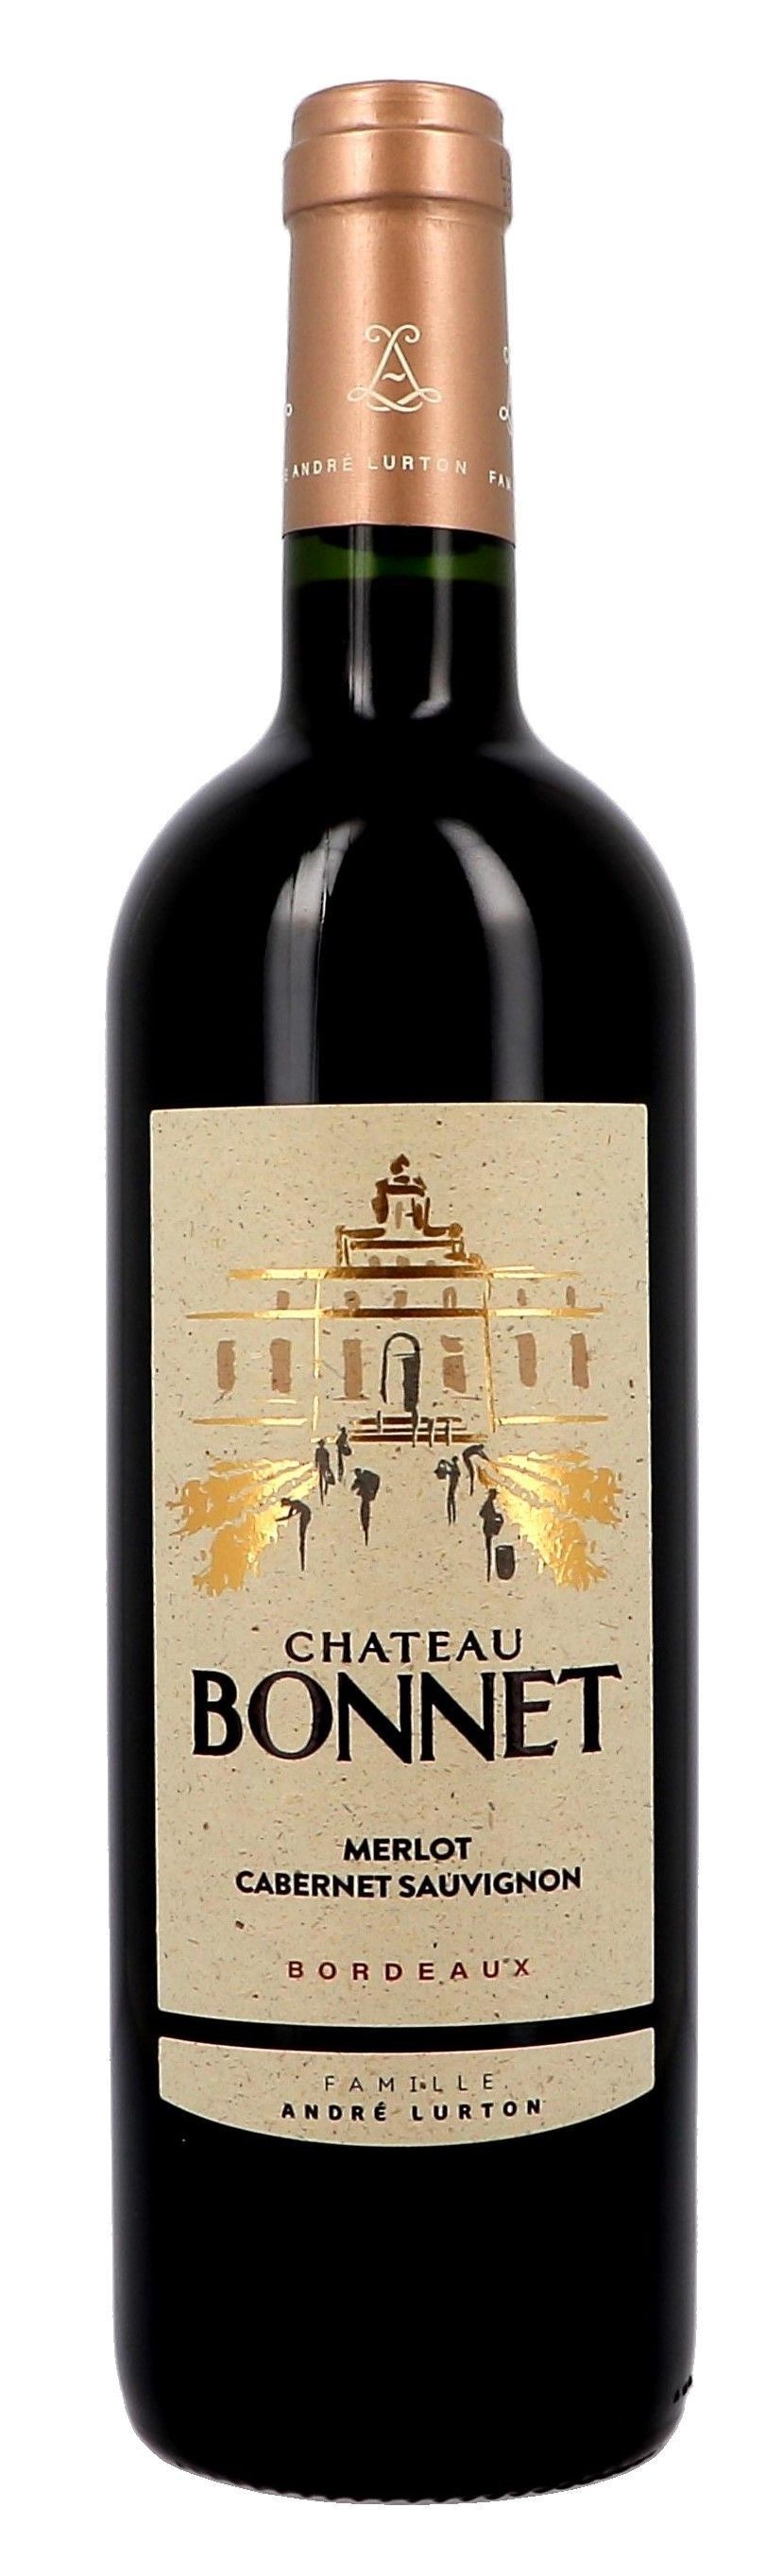 Chateau Bonnet rouge 75cl 2018 Bordeaux Andre Lurton